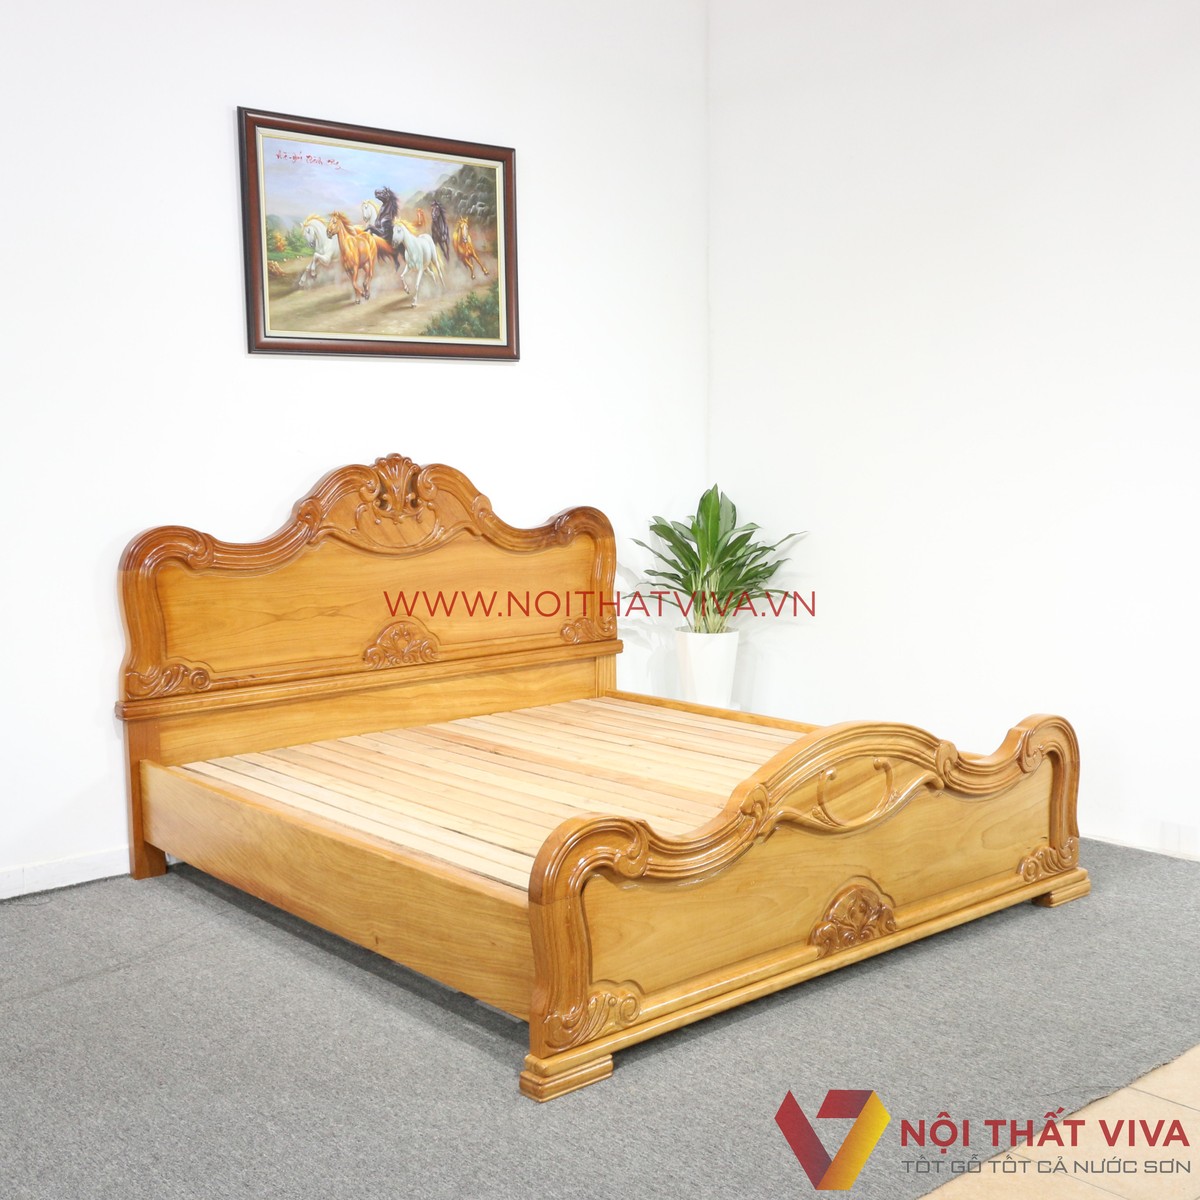 Giường ngủ gỗ bền chắc và cổ điển luôn là lựa chọn ưa thích của nhiều người. Hãy xem các hình ảnh đẹp và chất lượng để tìm thấy giường ngủ gỗ bền đẹp để trang trí cho căn phòng của bạn.